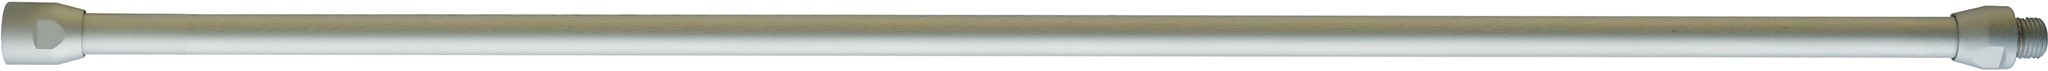 Bild von Verlängerungsrohr für Blaspistolen,Alu, gebogen300mm, M12x1,25mm, EWO